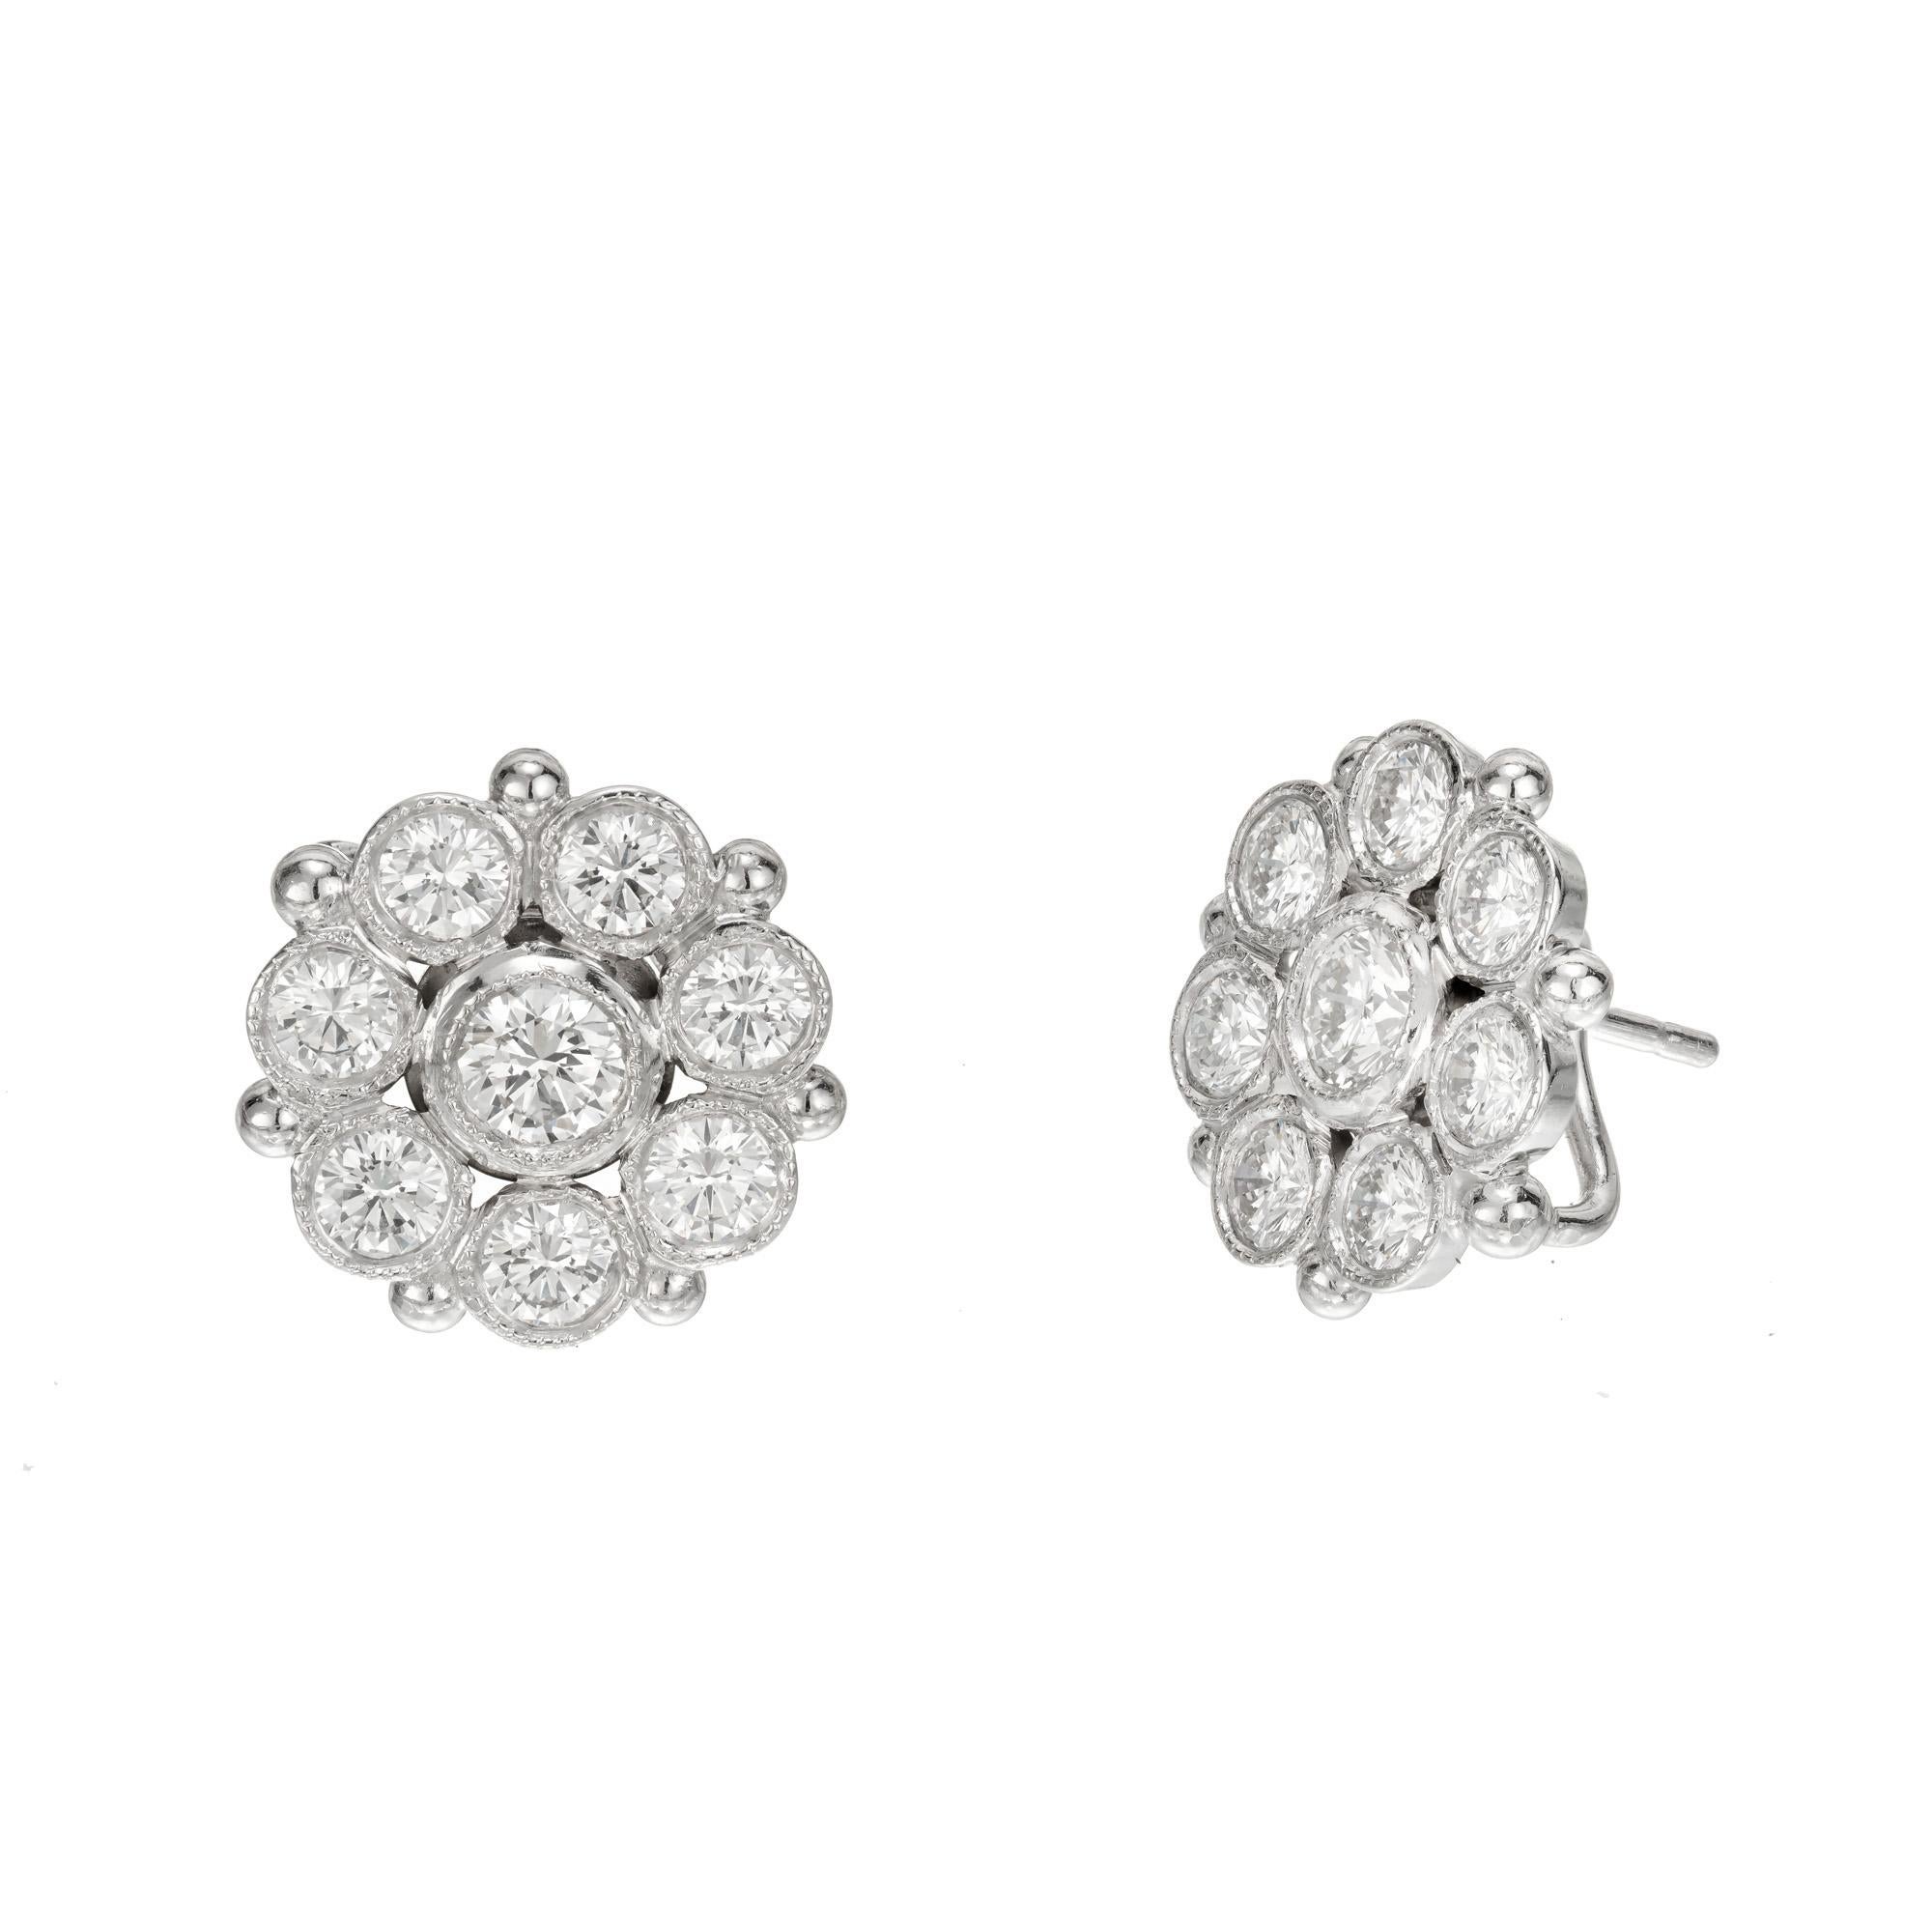 Featherstone-Diamantkugel-Ohrringe mit Blumenaufsatz. 16 runde Diamanten im Brillantschliff, gefasst in einer Platinfassung mit Blumenaufsatz. Jeder Ohrring hat ein Scharnier, an dem ein Edelstein oder eine Perle hängen kann. 

16 runde Diamanten im